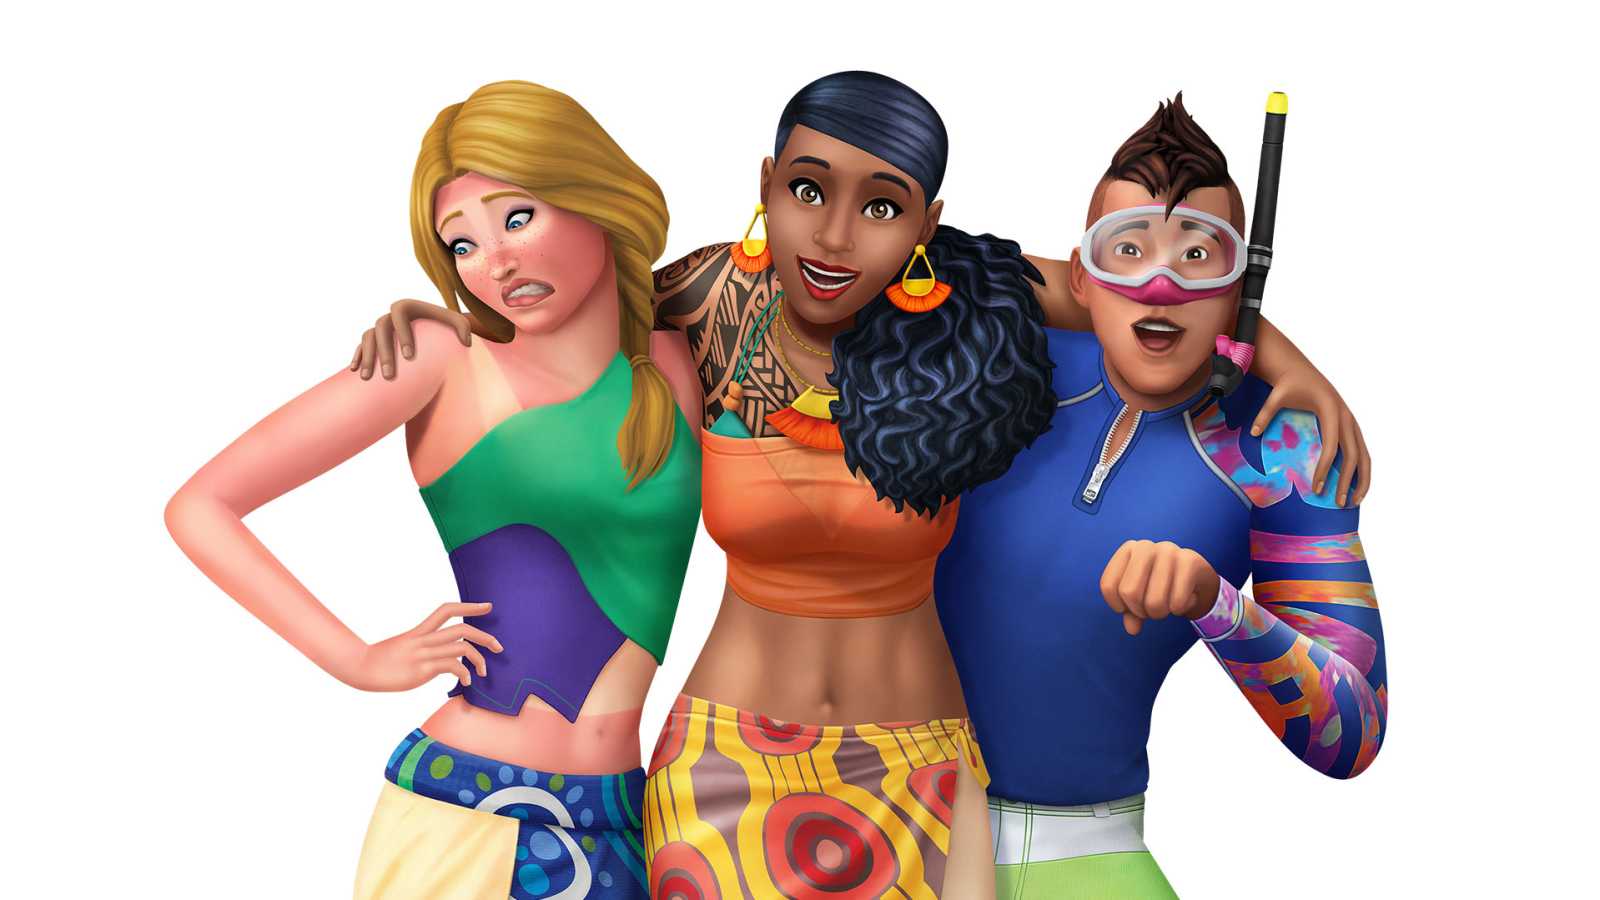 Potvrzeno: The Sims 5 si stáhnete zdarma. Některé dříve prémiové prvky budou rovnou v základní hře